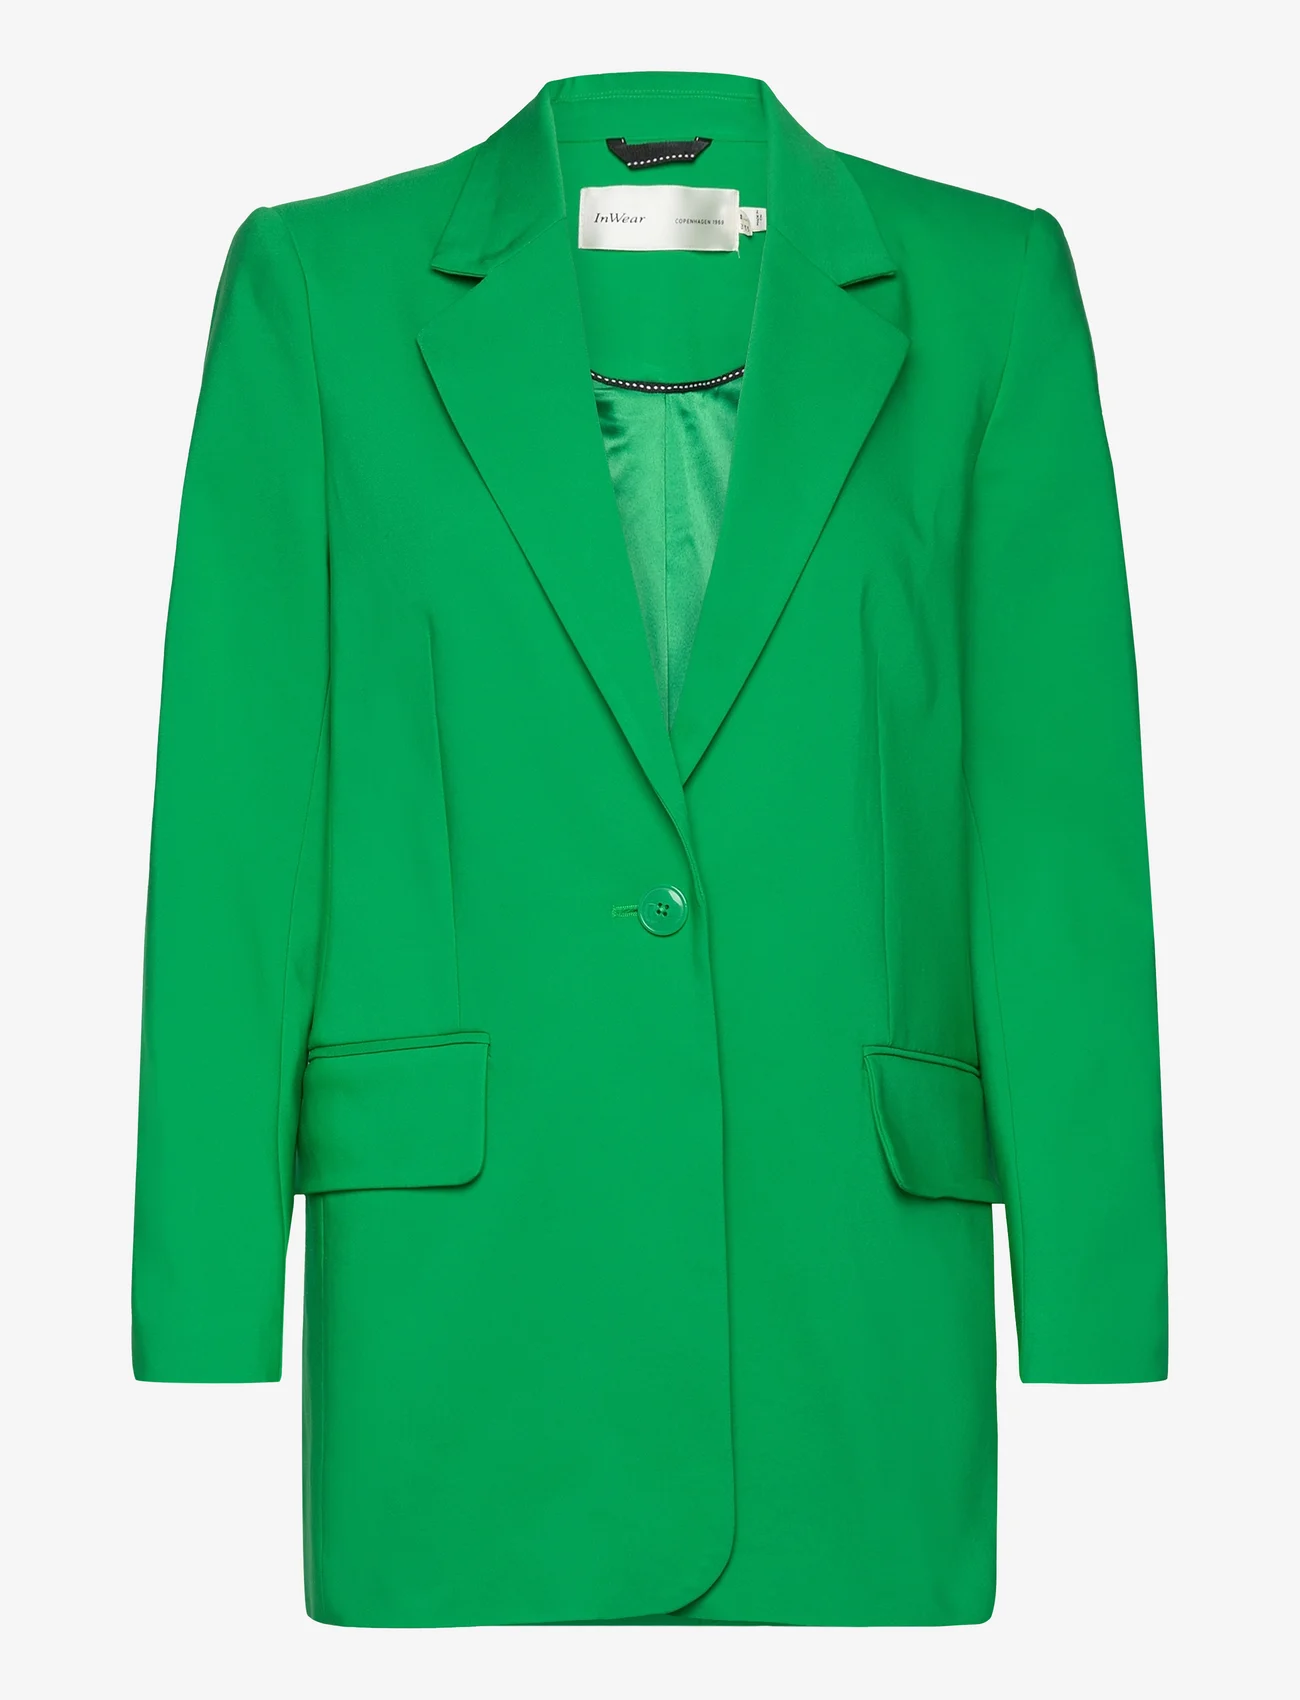 InWear - ZellaIW Long Blazer - feestelijke kleding voor outlet-prijzen - bright green - 0